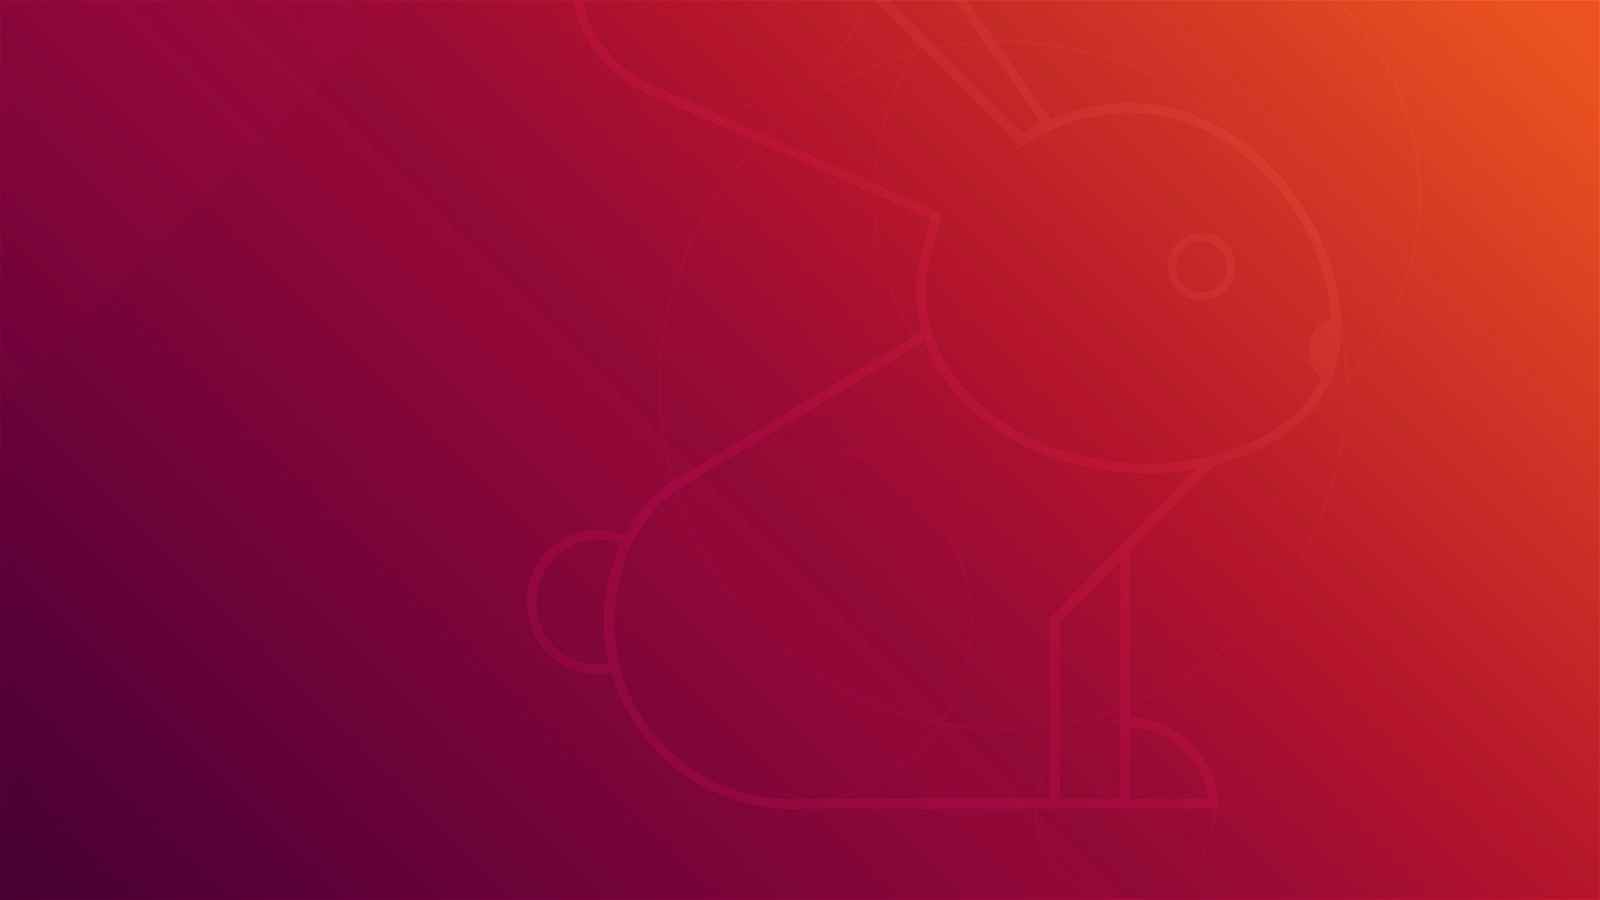 Raving Rabbit Ubuntu Wallpapers